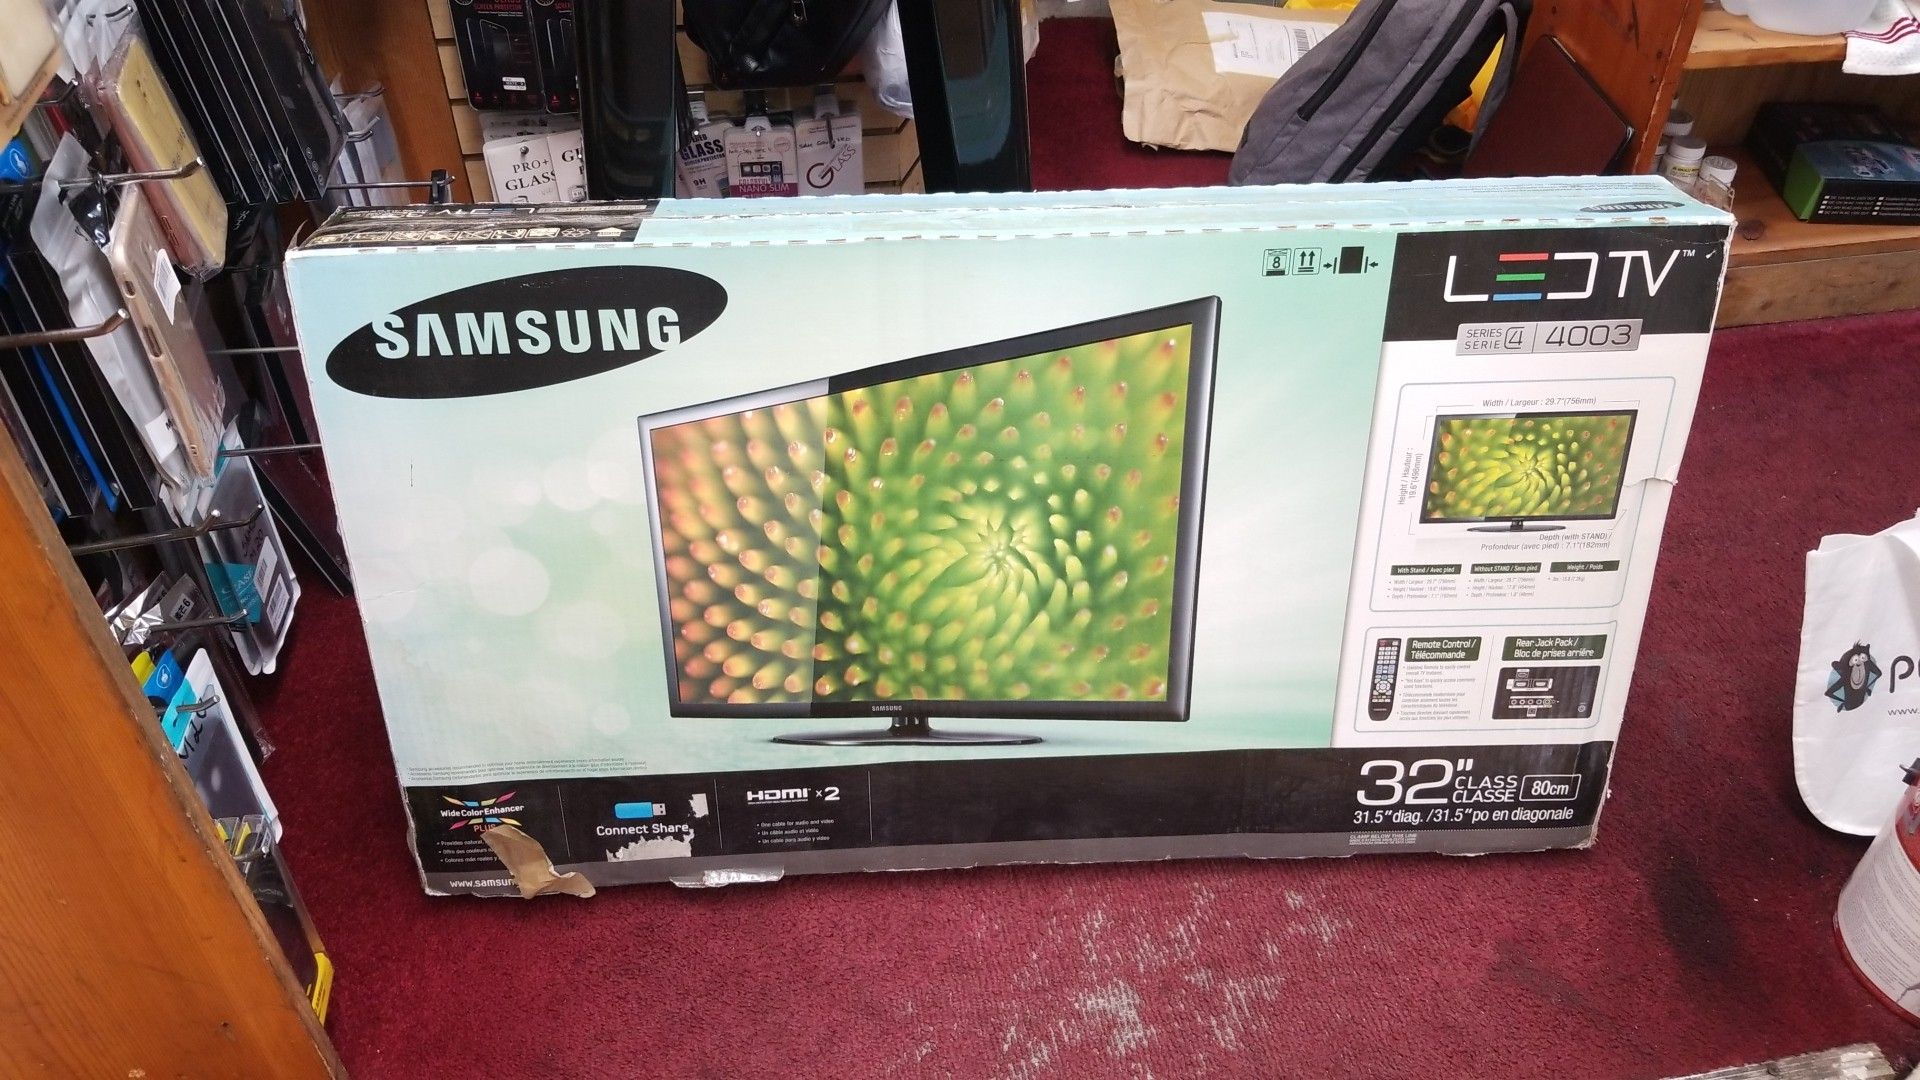 SAMSUNG LED TV SERIES 4 400...MODEL # UN32D4003BD FOR SALE!!!